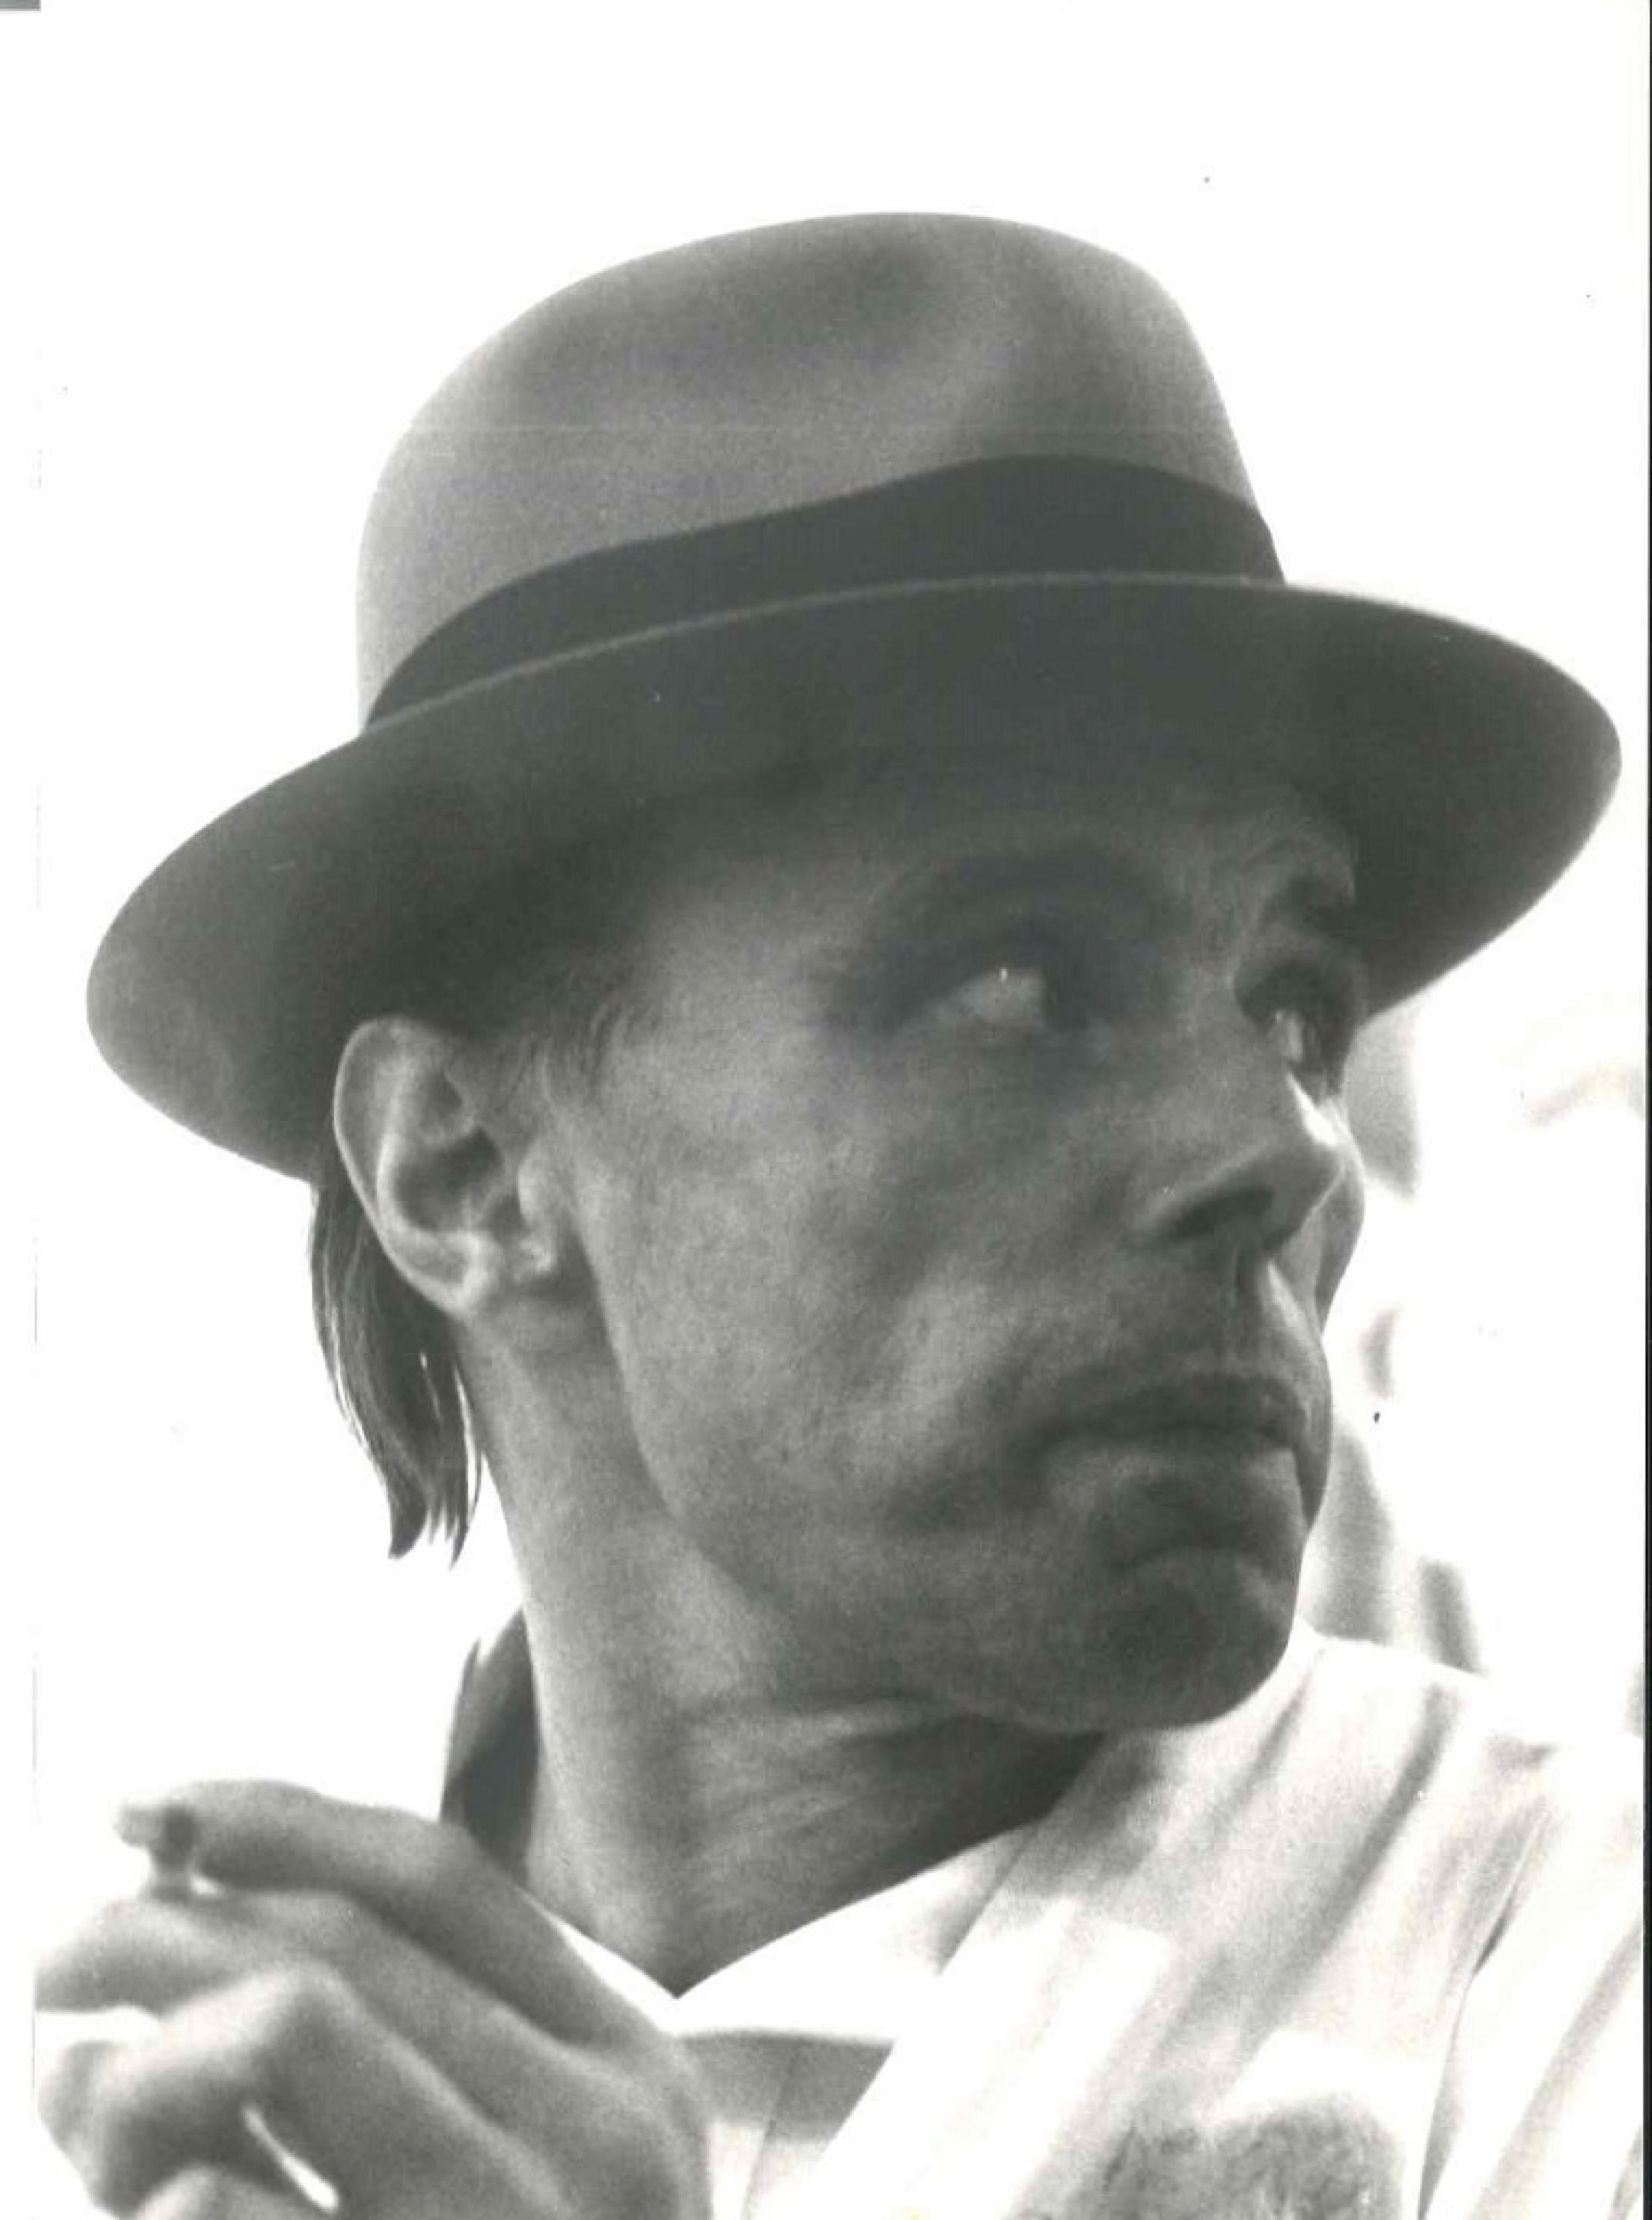 Portrait de Joseph Beuys  - Photo vintage, années 1970